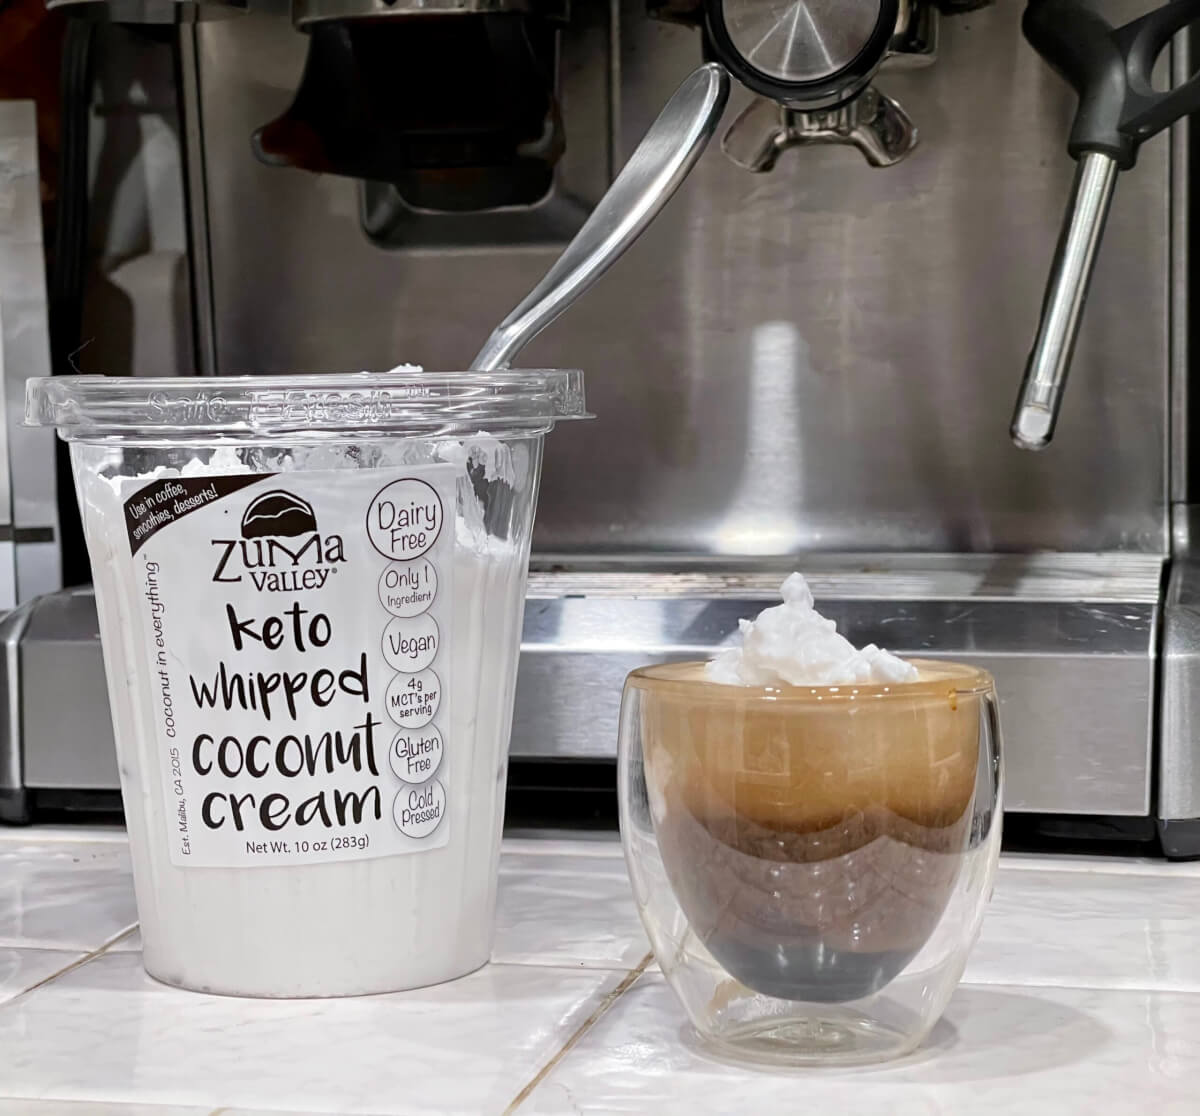 Espresso with keto whipped coconut cream